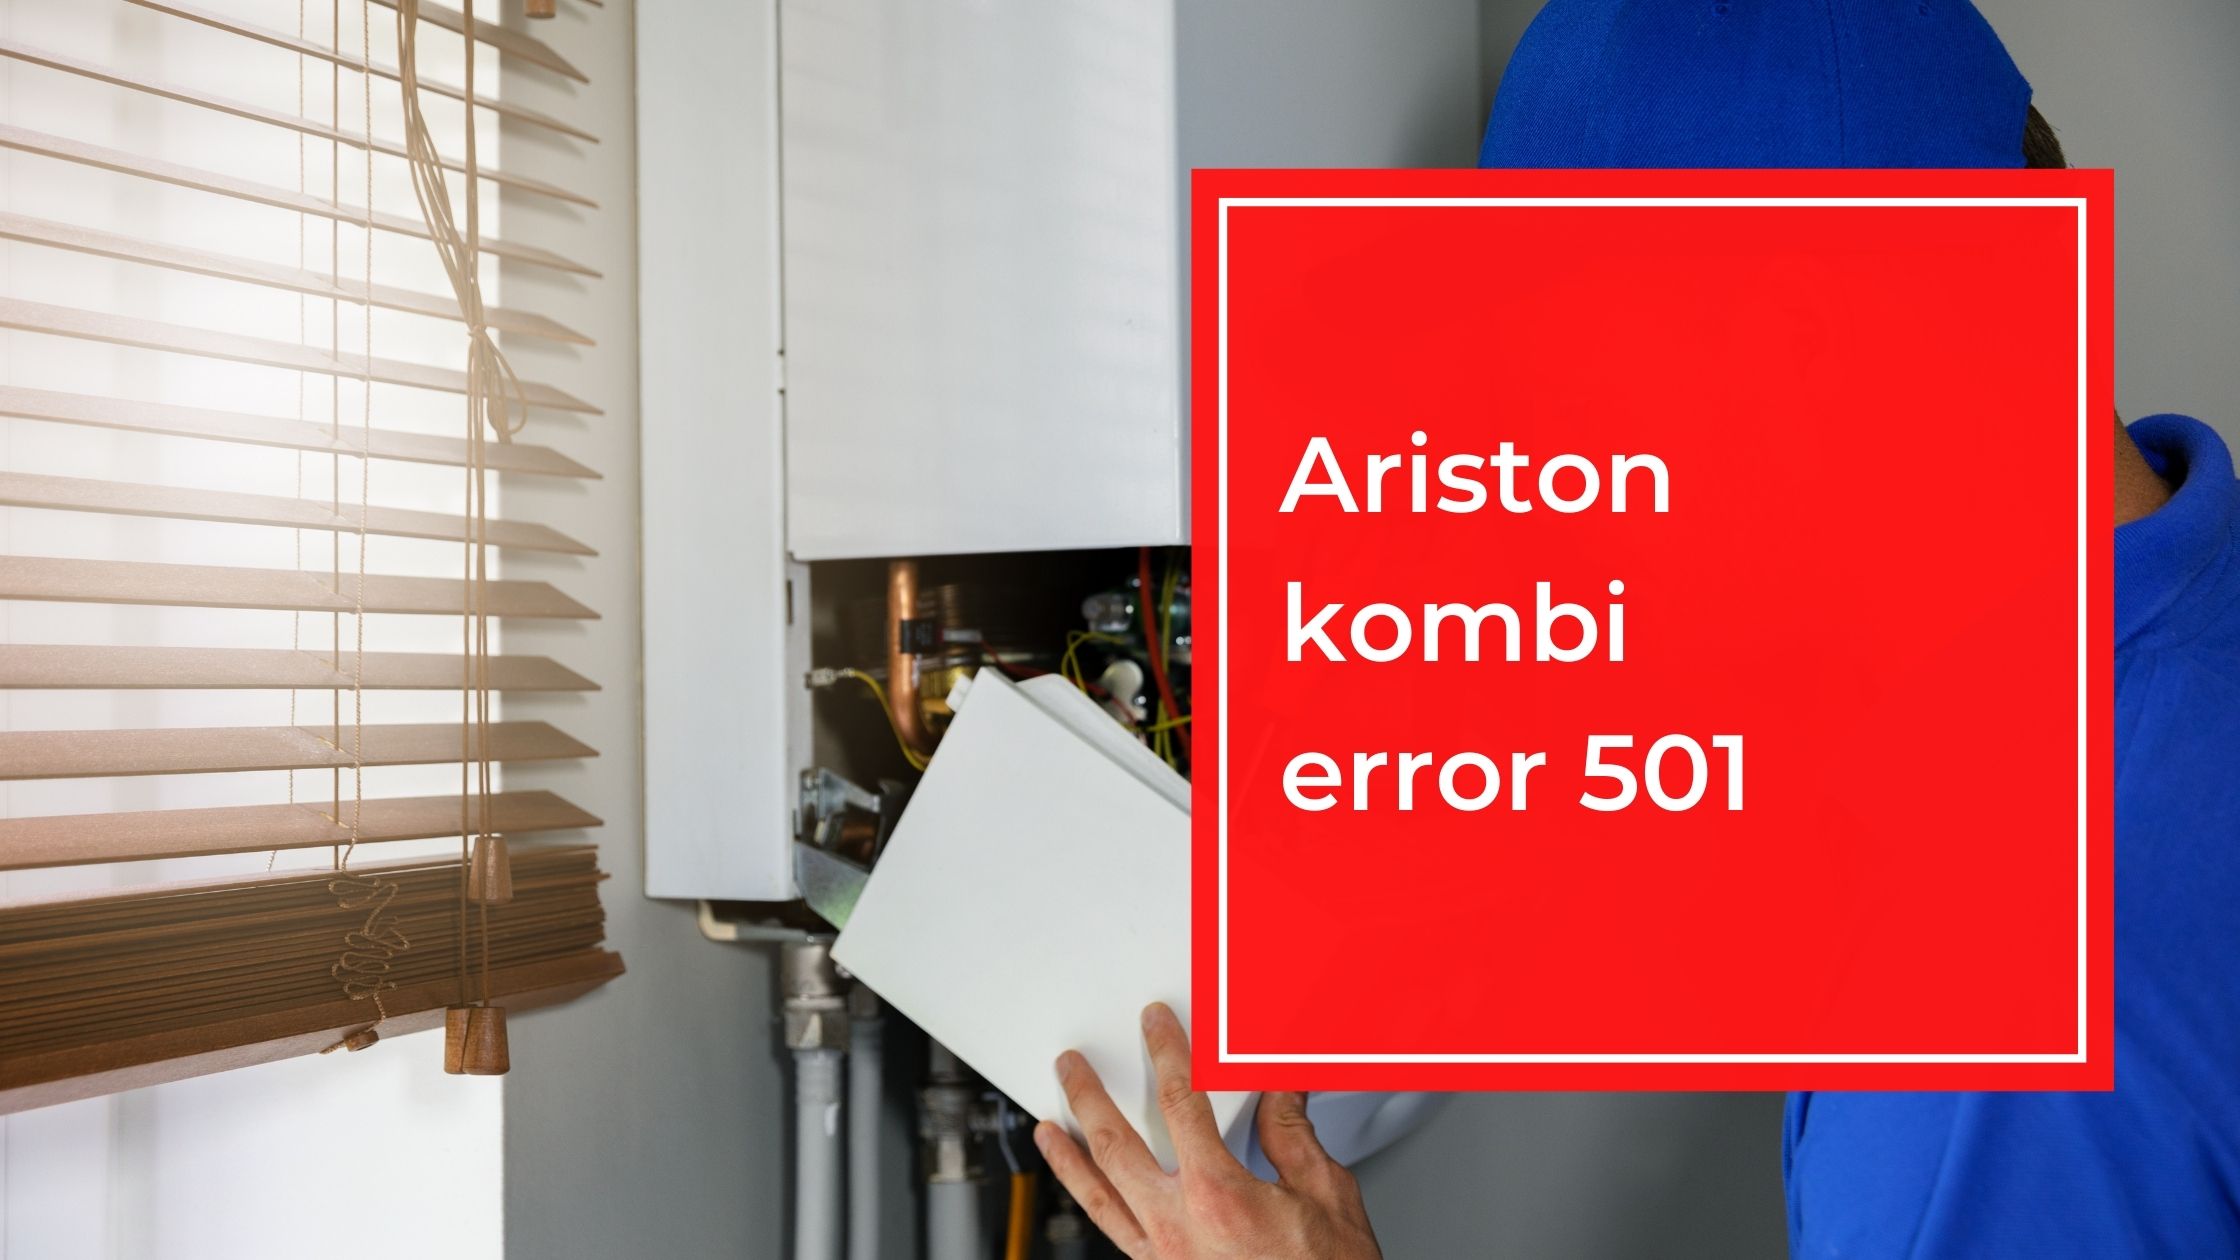 Ariston Kombi Error 501